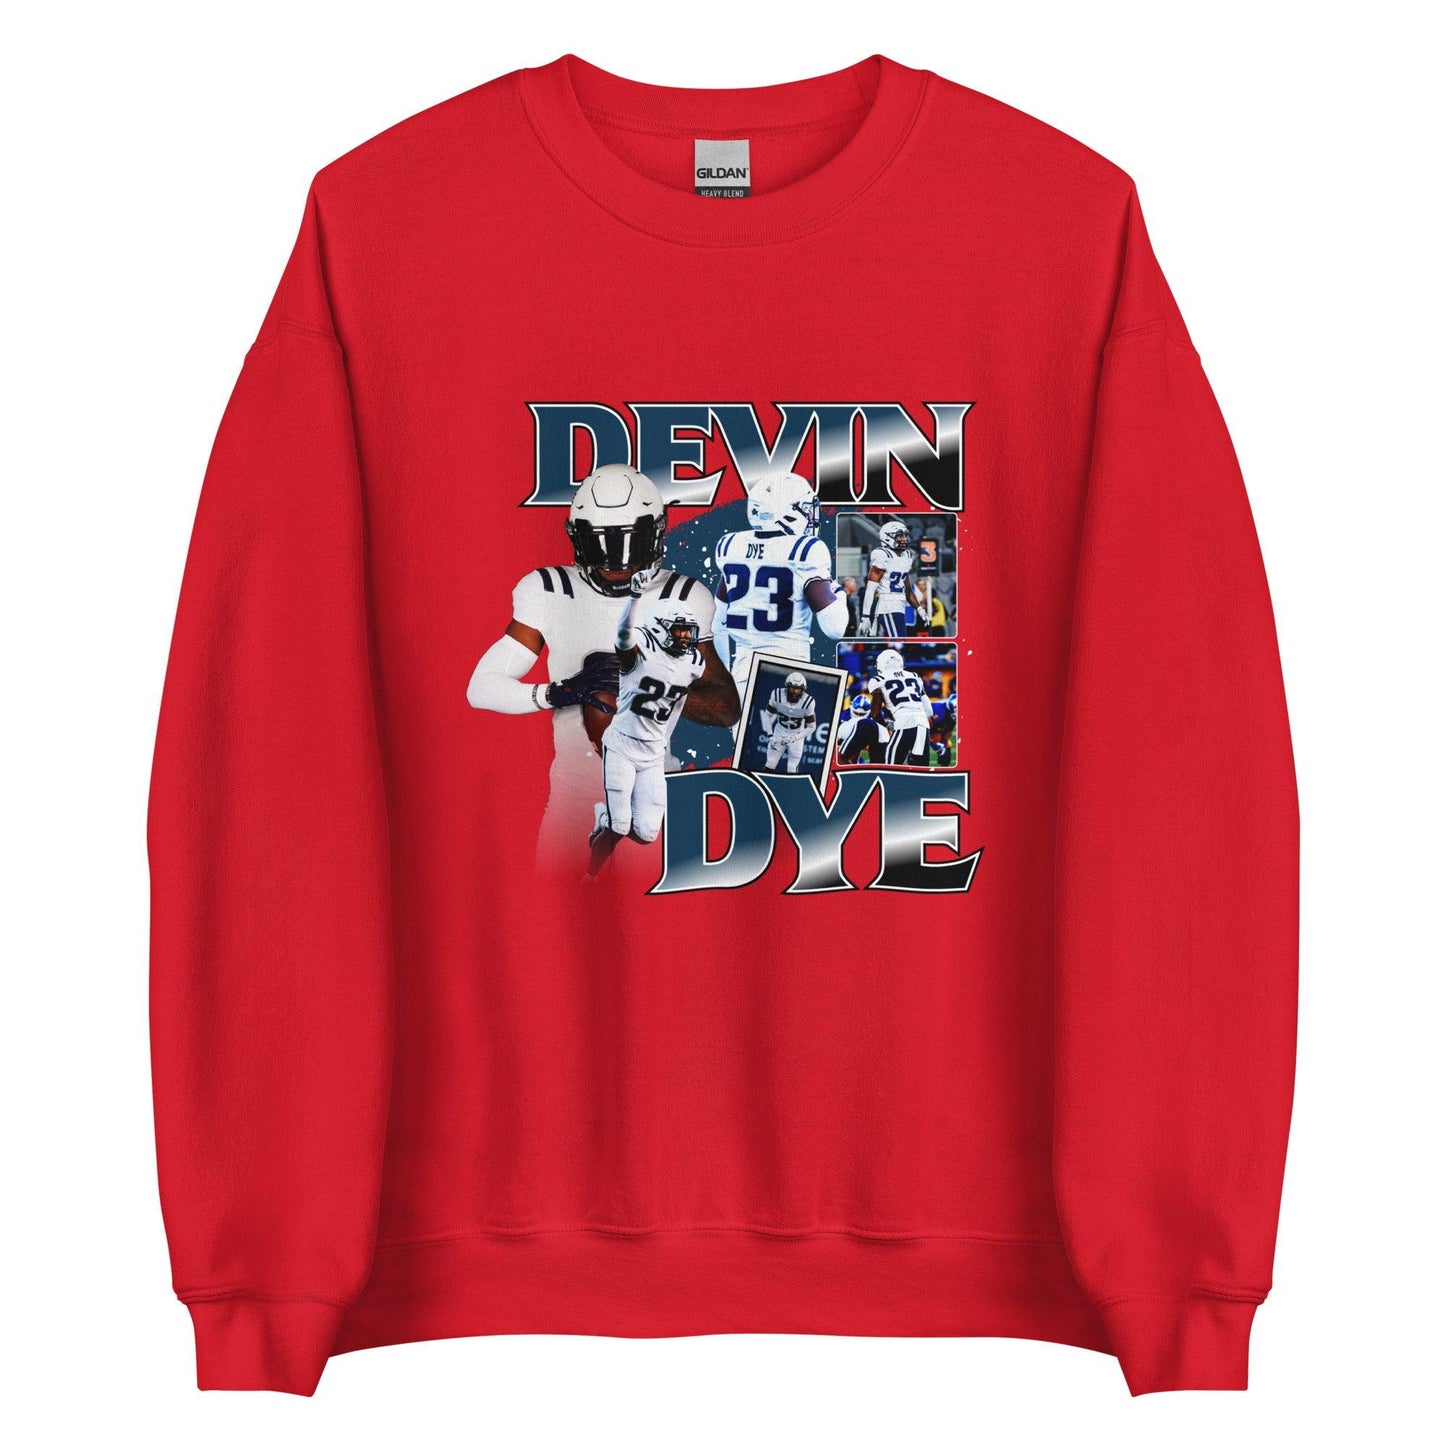 Devin Dye "Vintage" Sweatshirt - Fan Arch